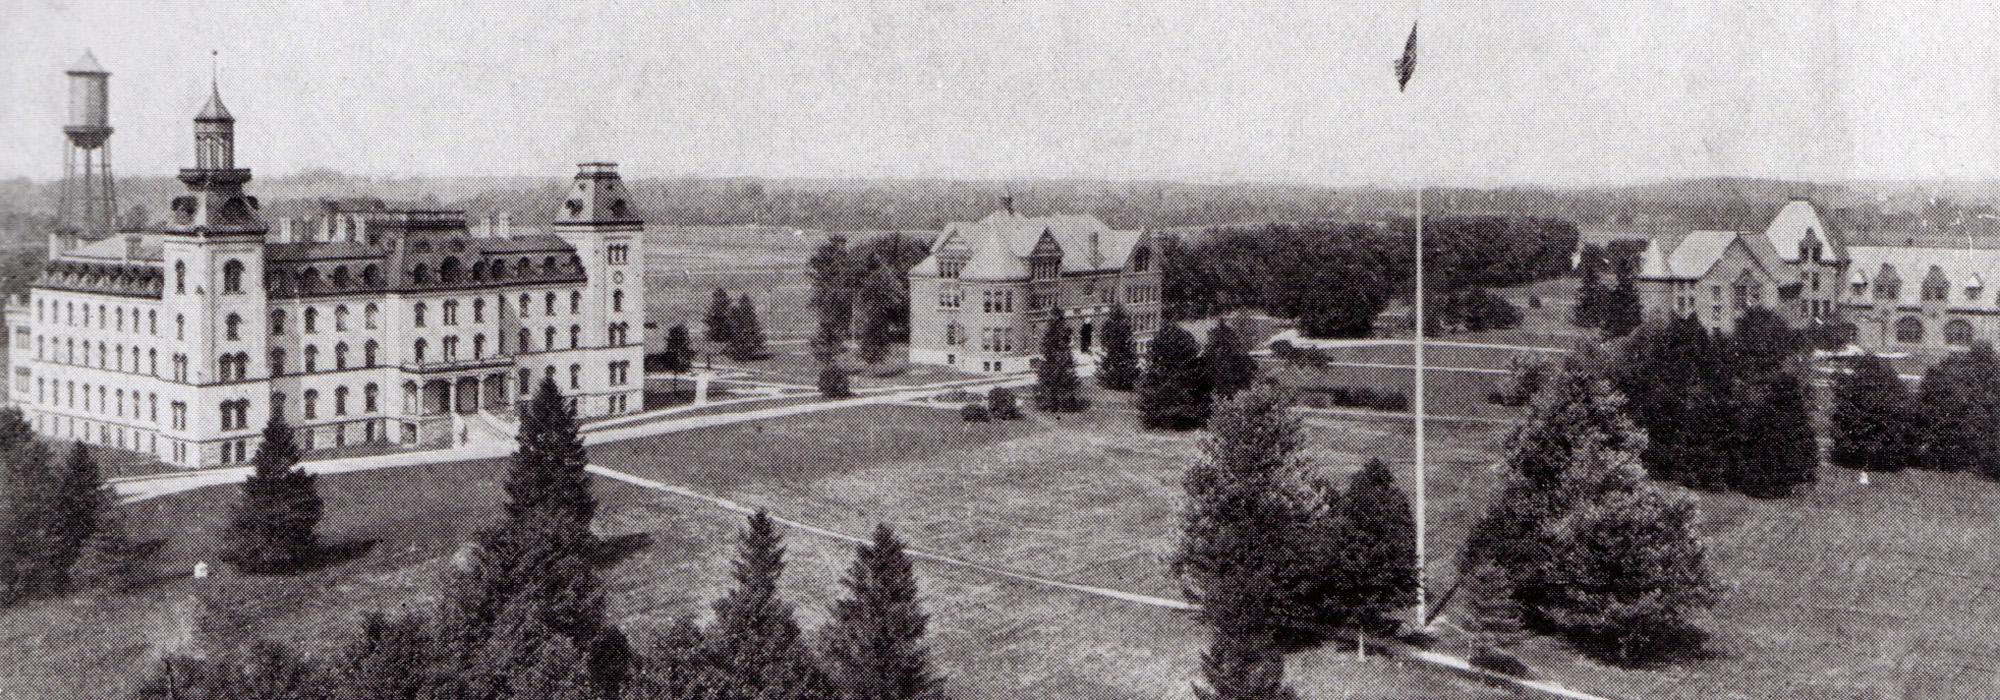 Iowa State University, circa 1896-1900